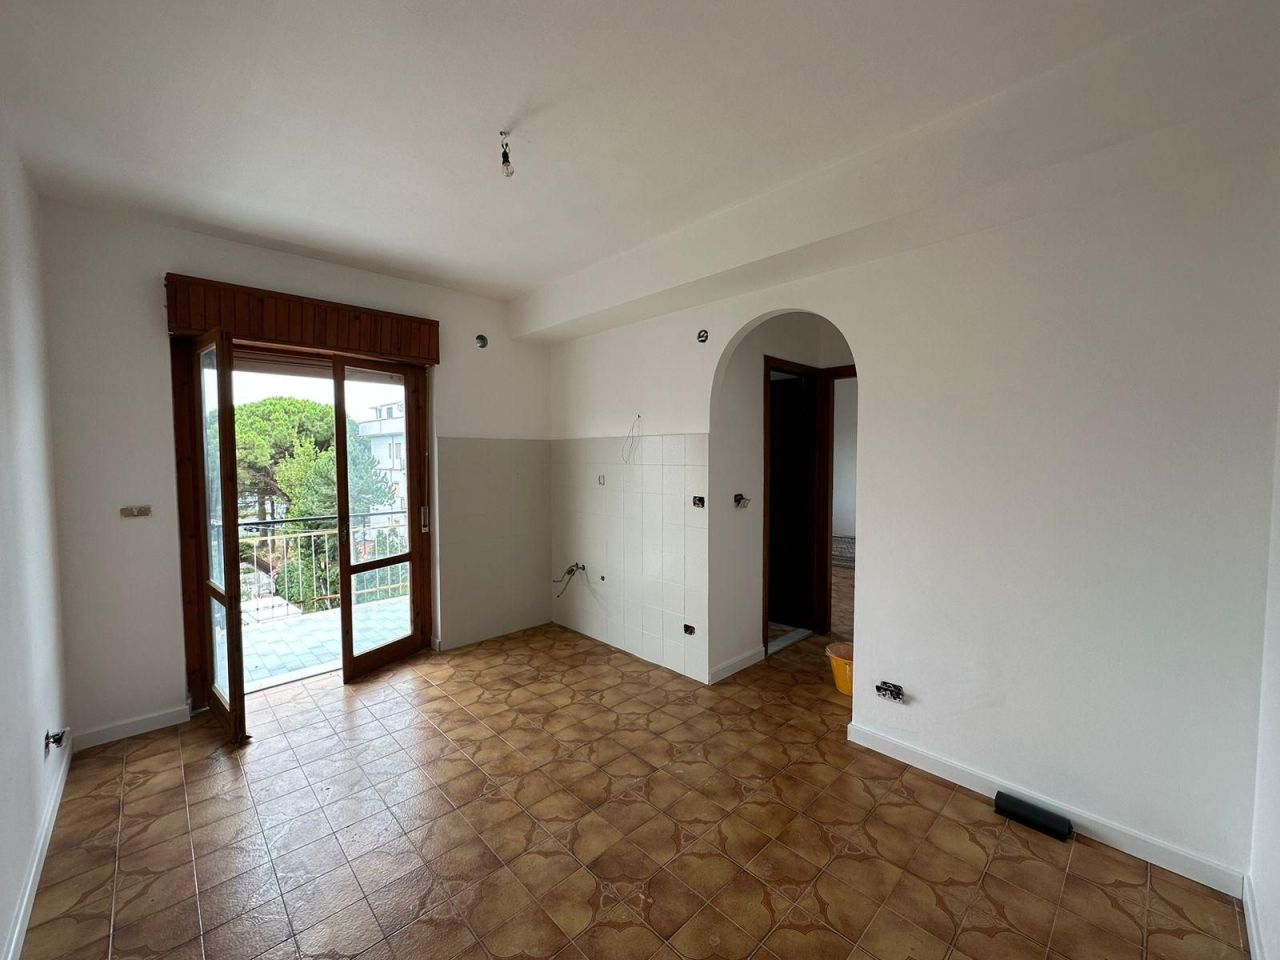 Апартаменты в Скалее, Италия, 40 м² - фото 1